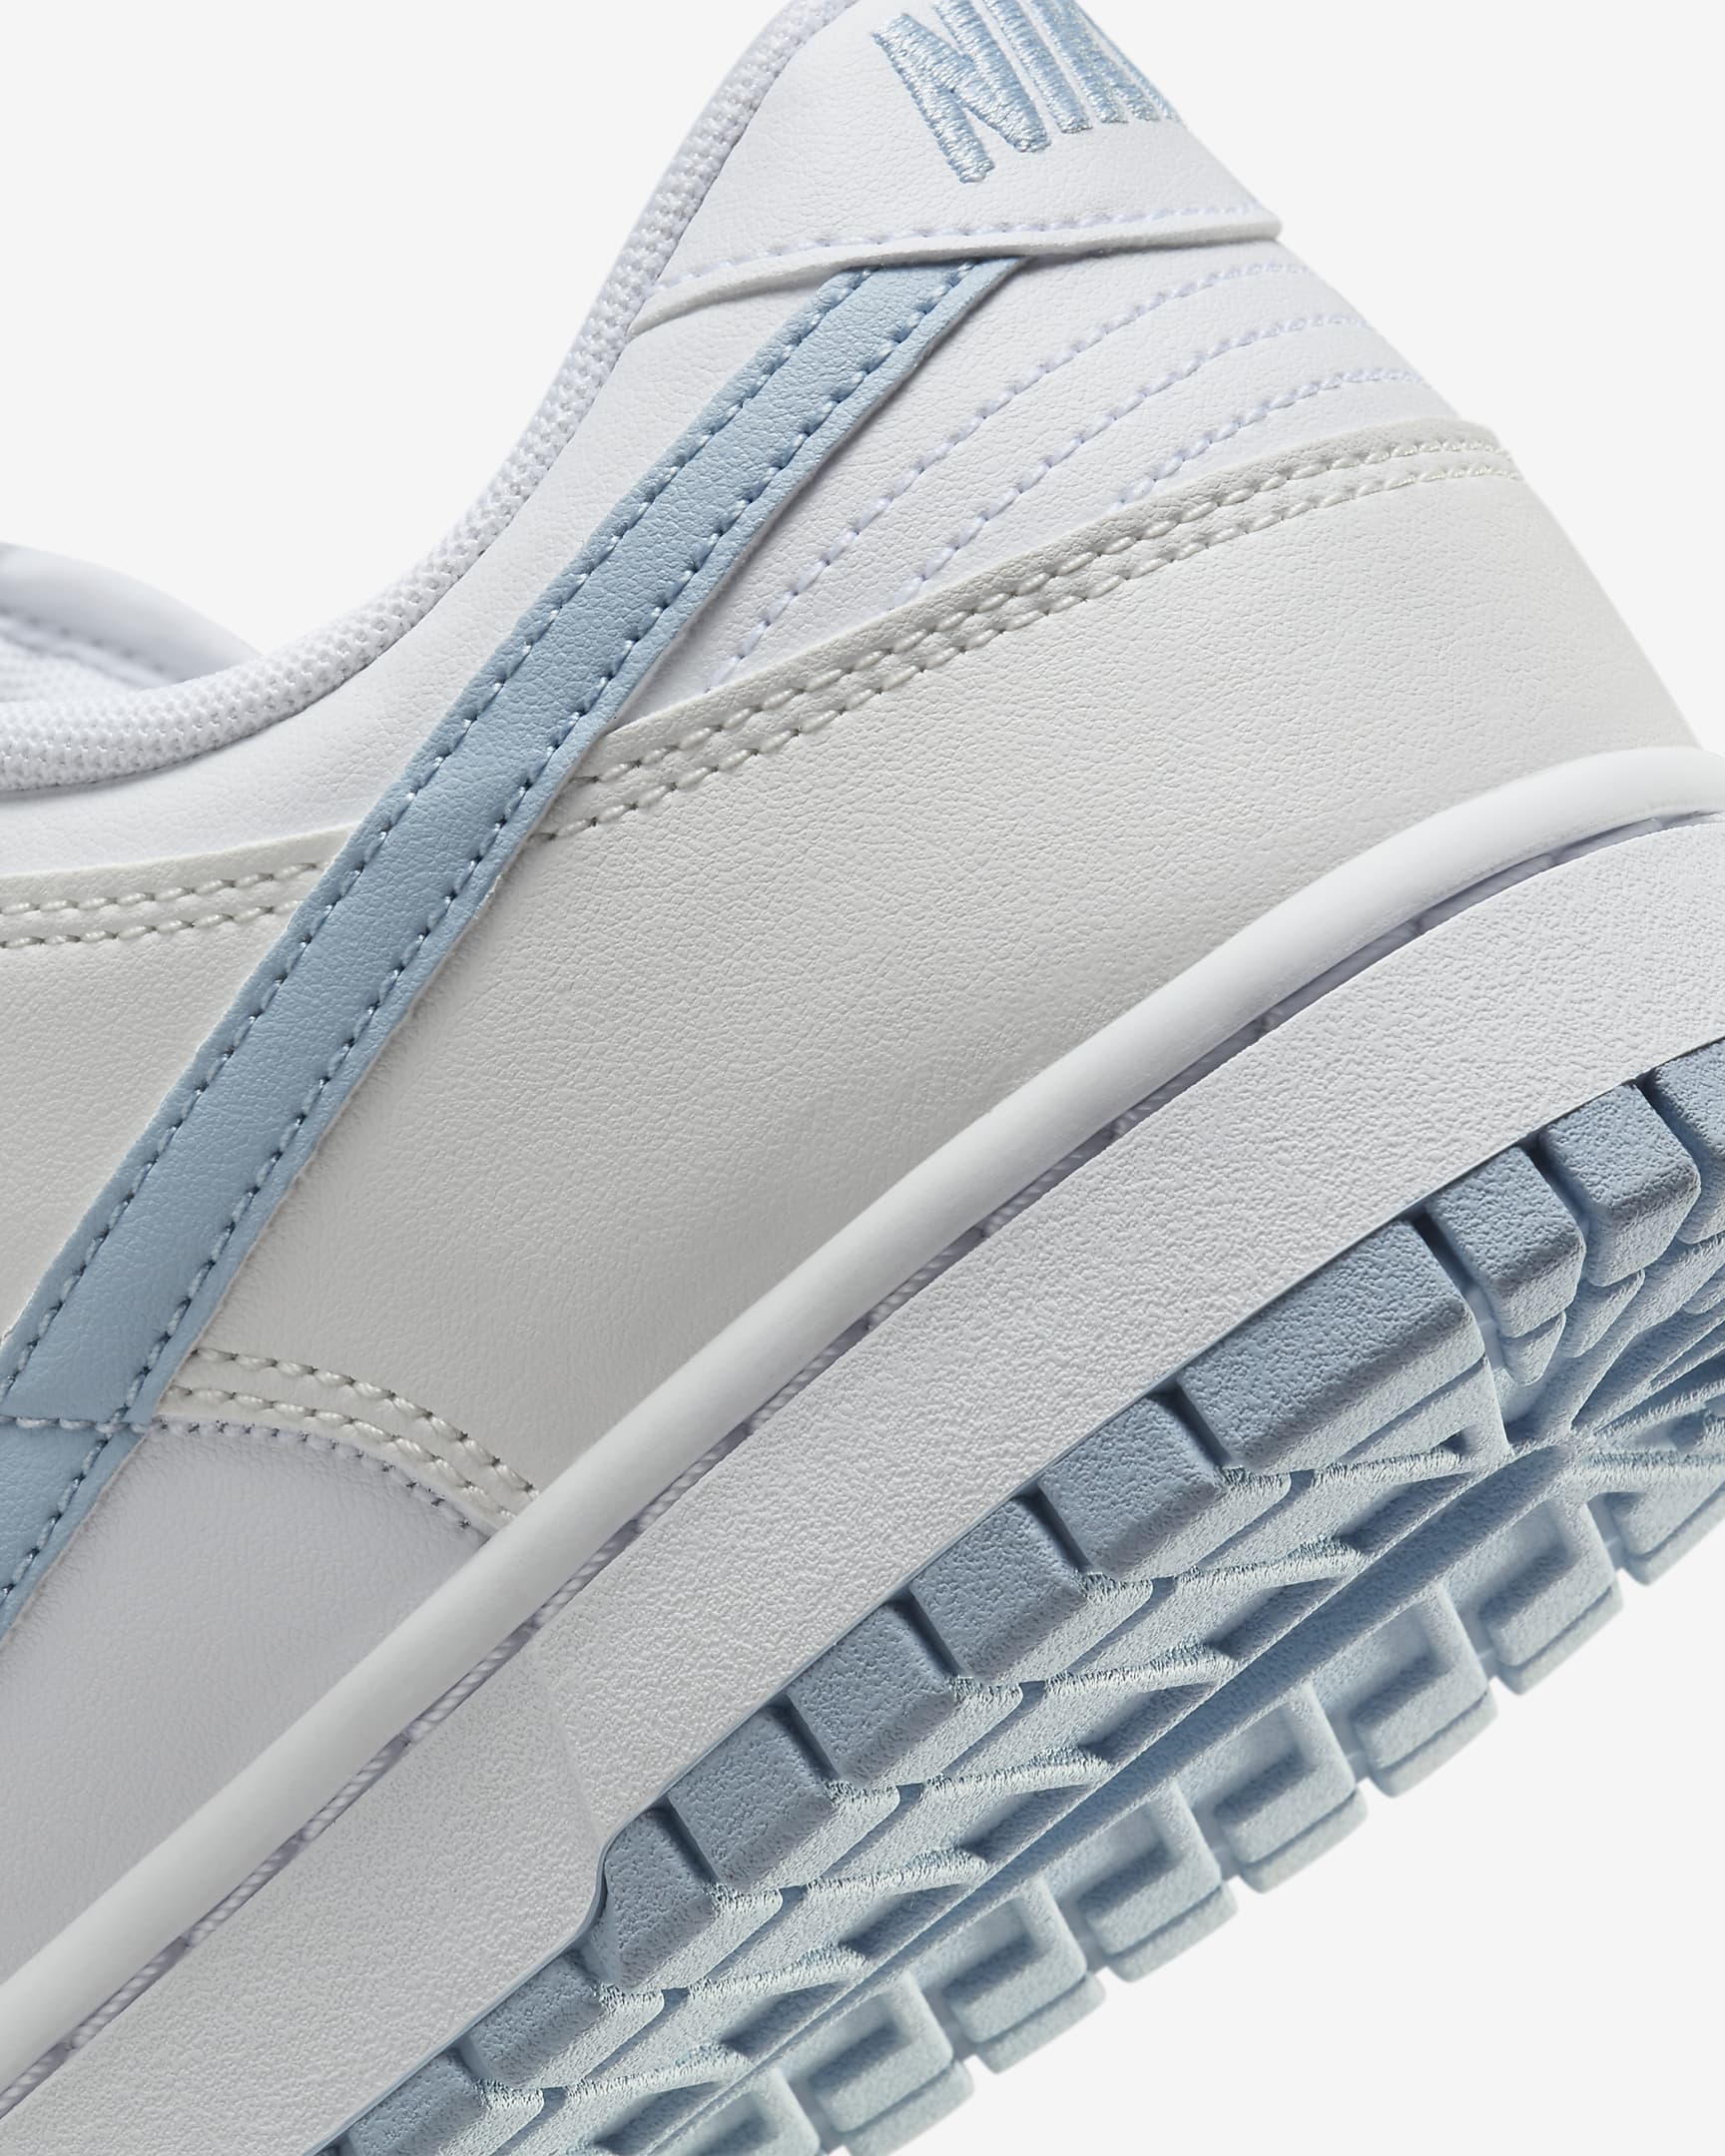 Nike Dunk Low Retro Men's Shoes - White/Summit White/Light Armoury Blue